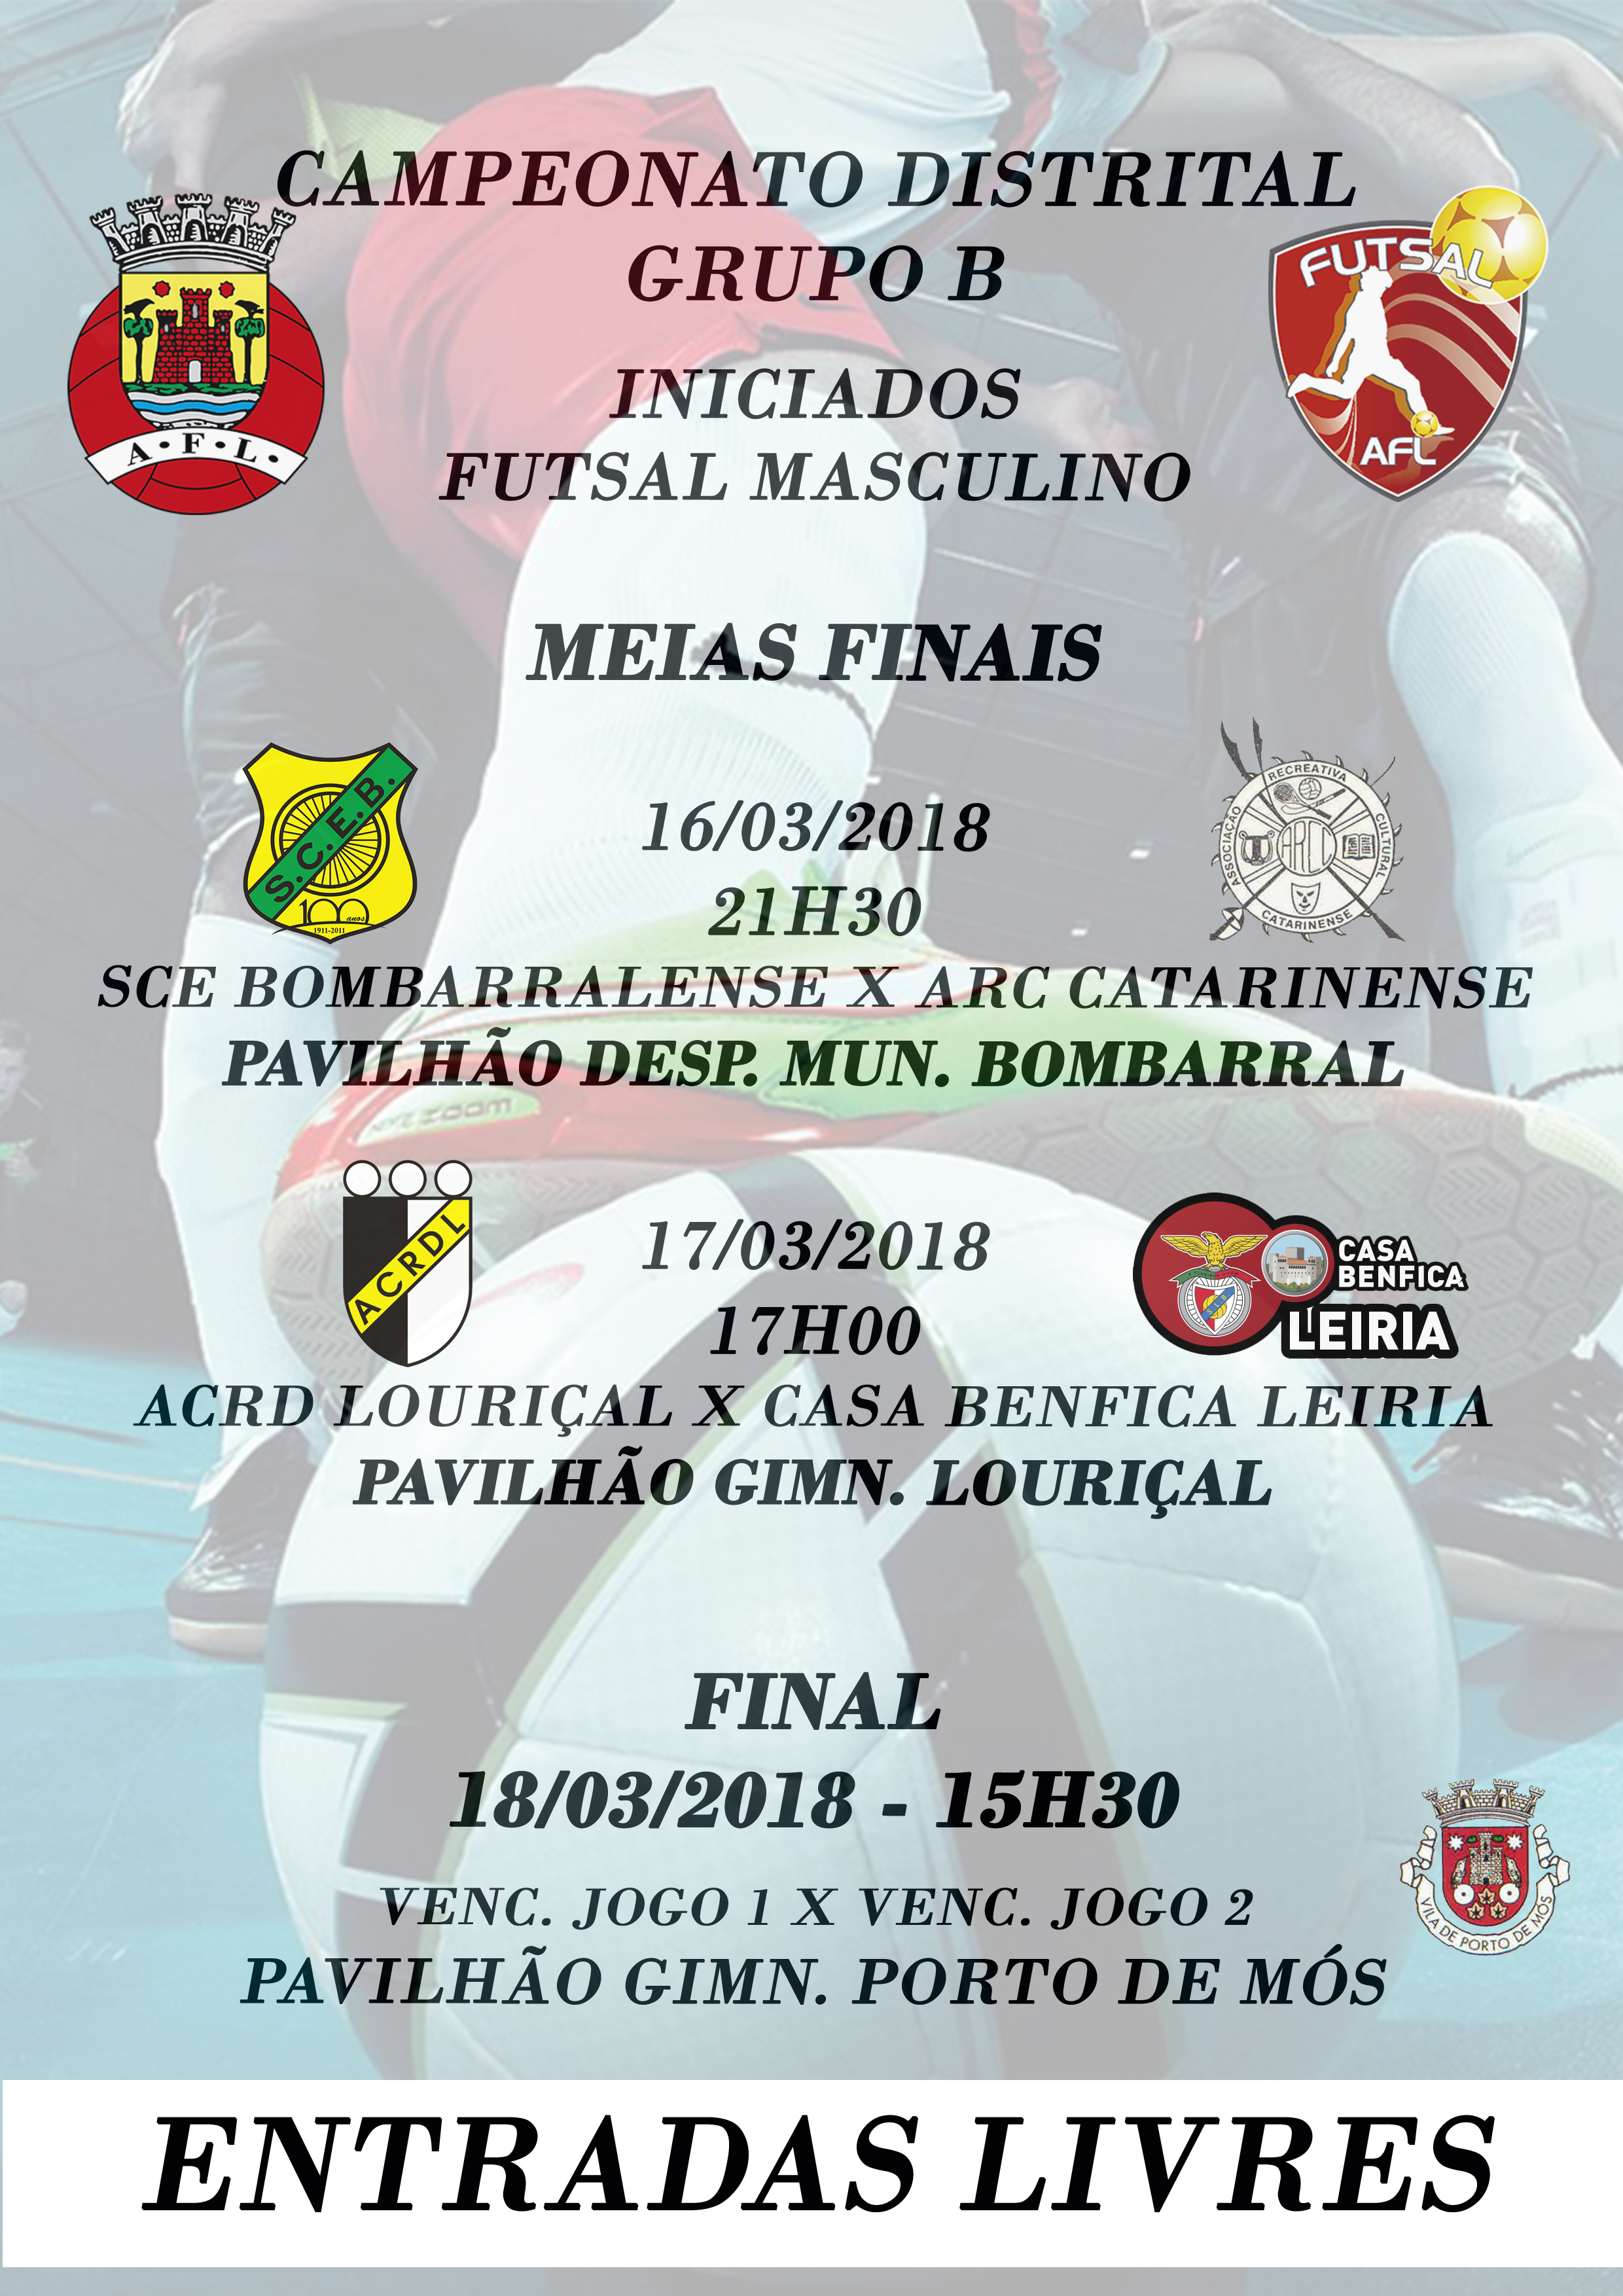 Campeonato Distrital - Grupo B - Iniciados - Futsal Masculino! 